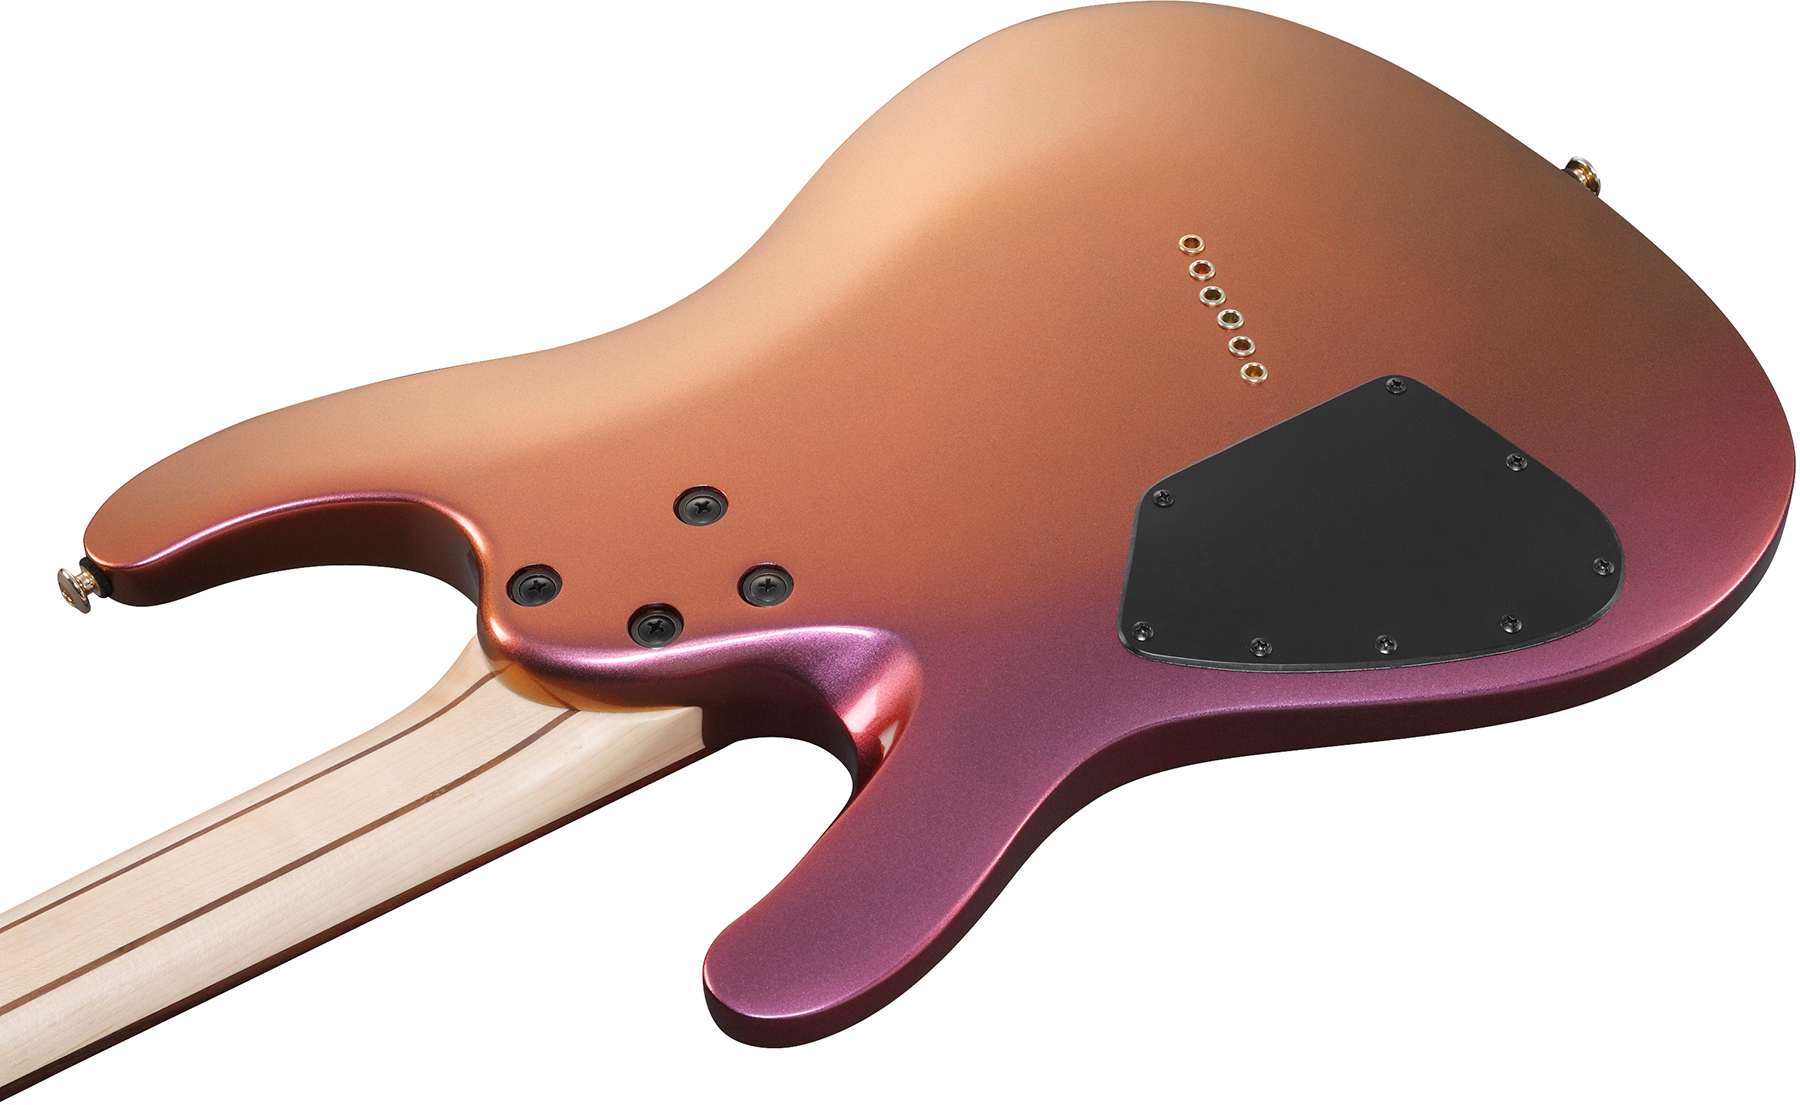 Ibanez Sml721 Rgc Axe Design Lab Multiscale 2h Ht Rw - Rose Gold Chameleon - Guitare Électrique Multi-scale - Variation 3